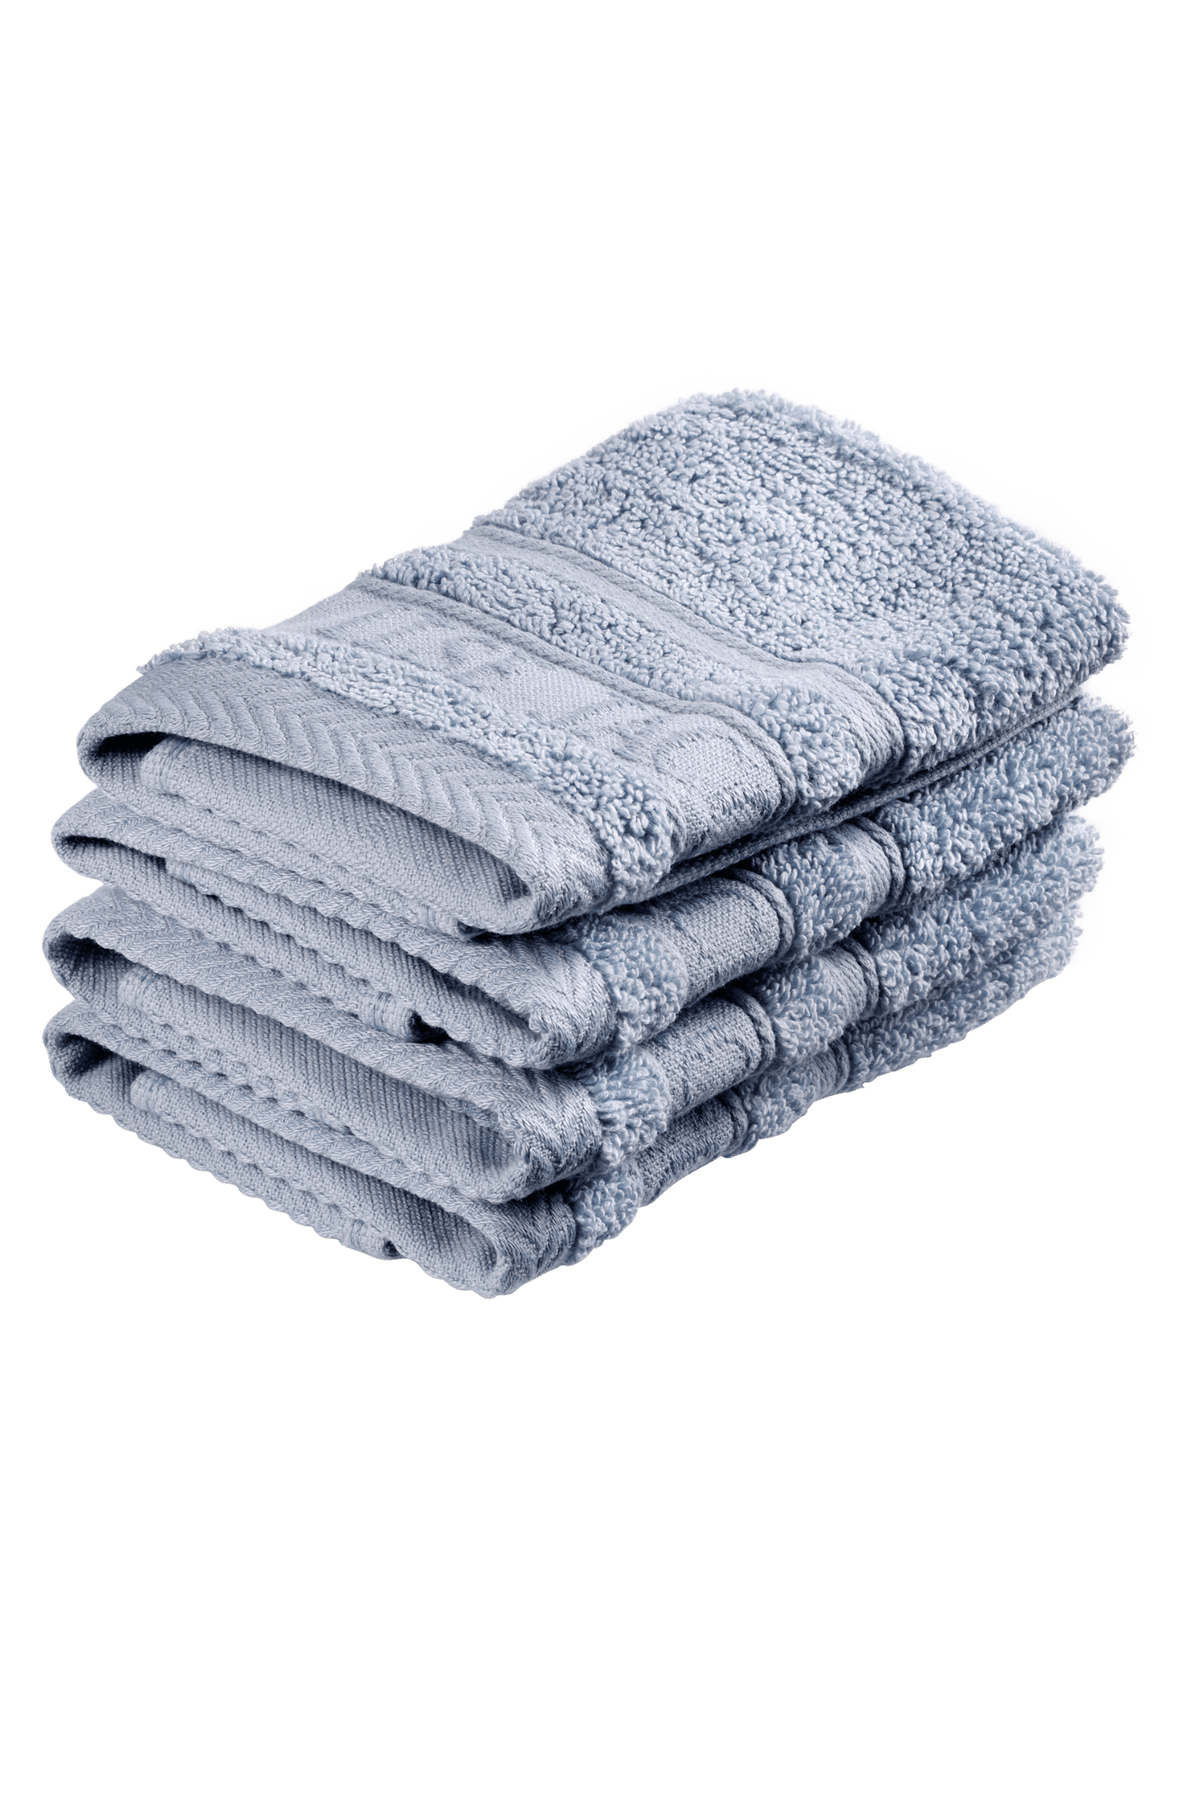 Wash cloth - Powder Blue